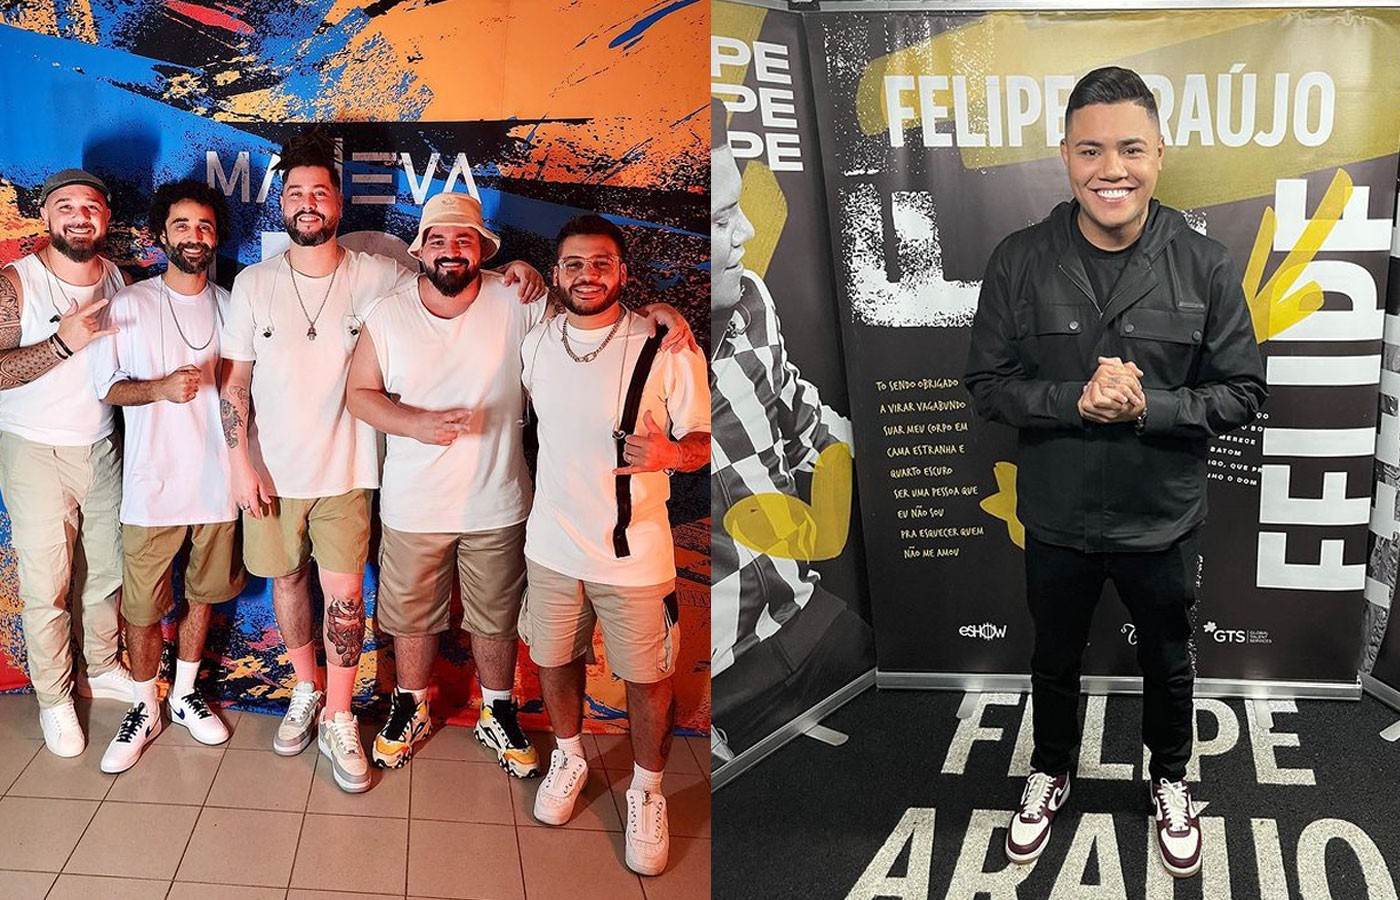 Maneva convida Felipe Araújo para gravação do hit sertanejo 'Evidências' em novo DVD